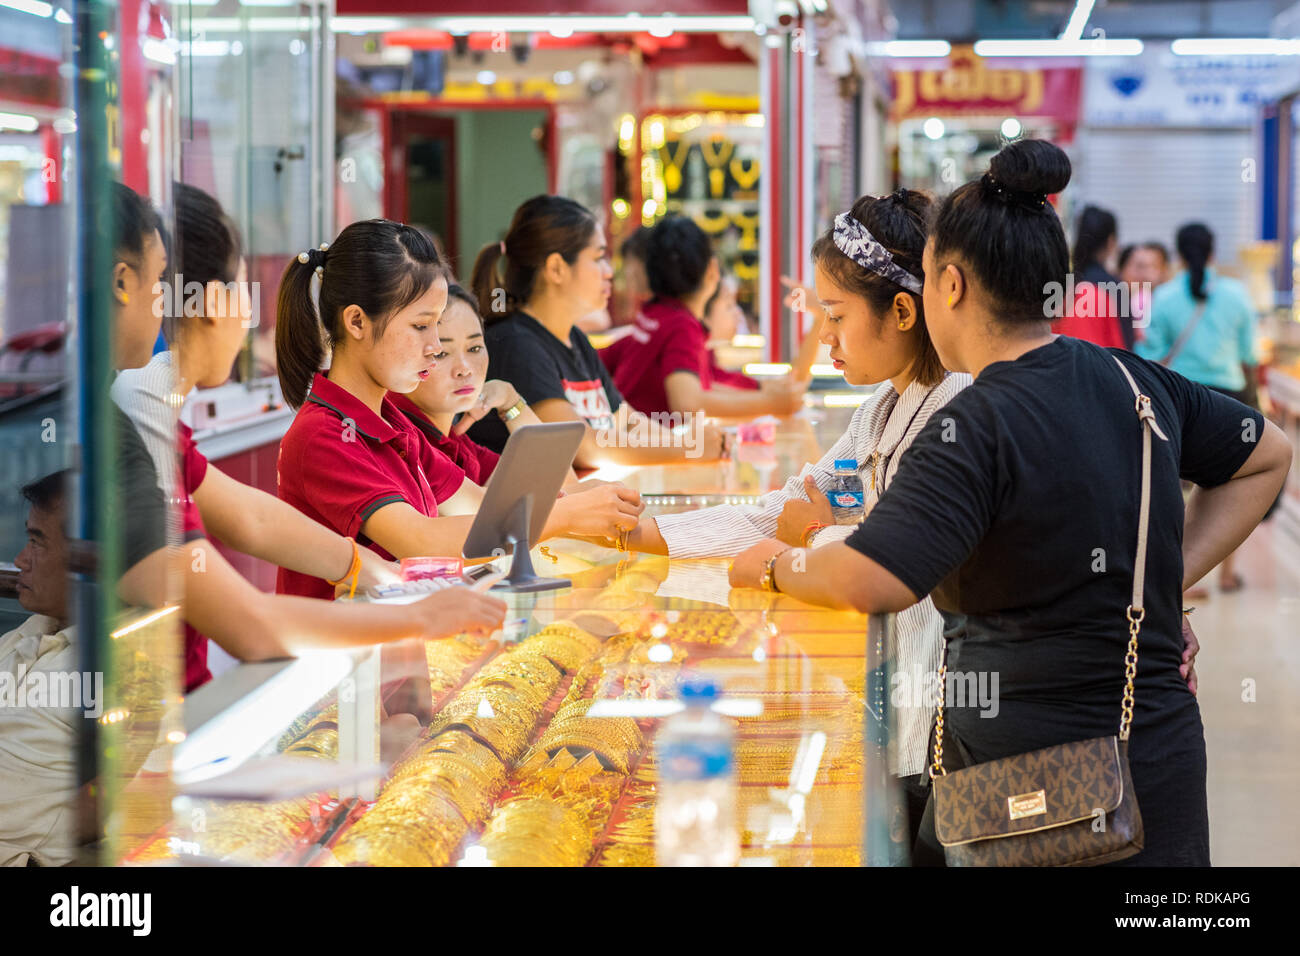 Vientiane, República Democrática Popular Lao - Agosto 9, 2018: el joven trata de una pulsera de oro en presencia de su amigo y tres mujeres vendedoras en Talat Sao Mall. Foto de stock